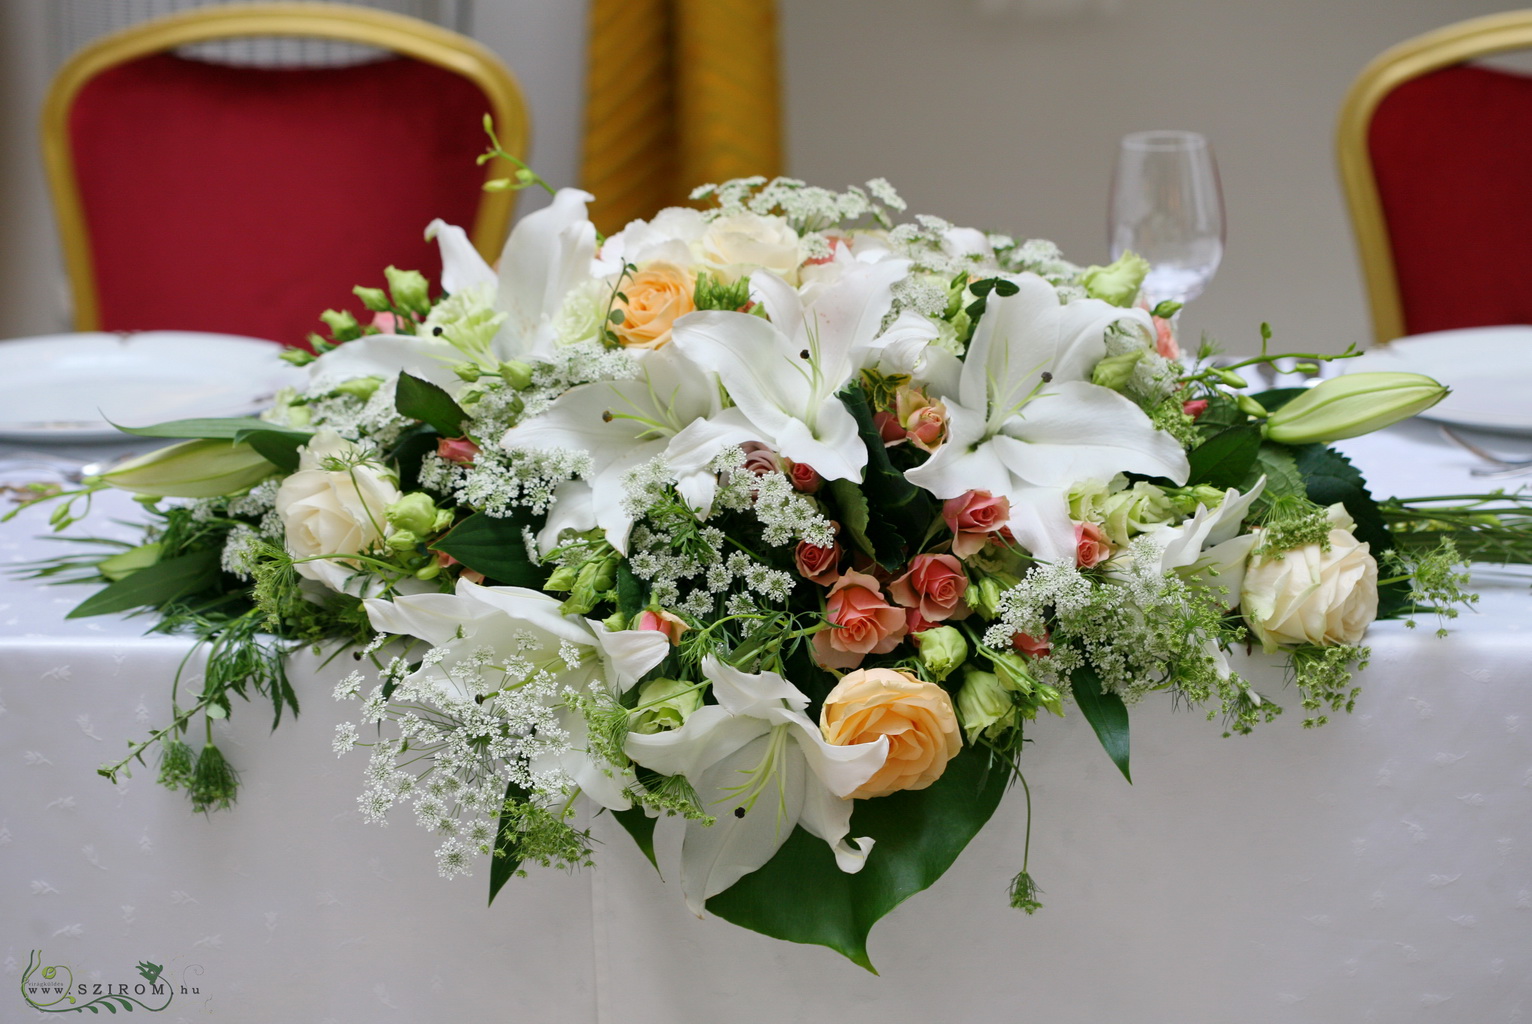 Virágküldés Budapest - Főasztaldísz Gerbeaud Átrium (liliom, rózsa, liziantusz, fehér, barack), esküvő